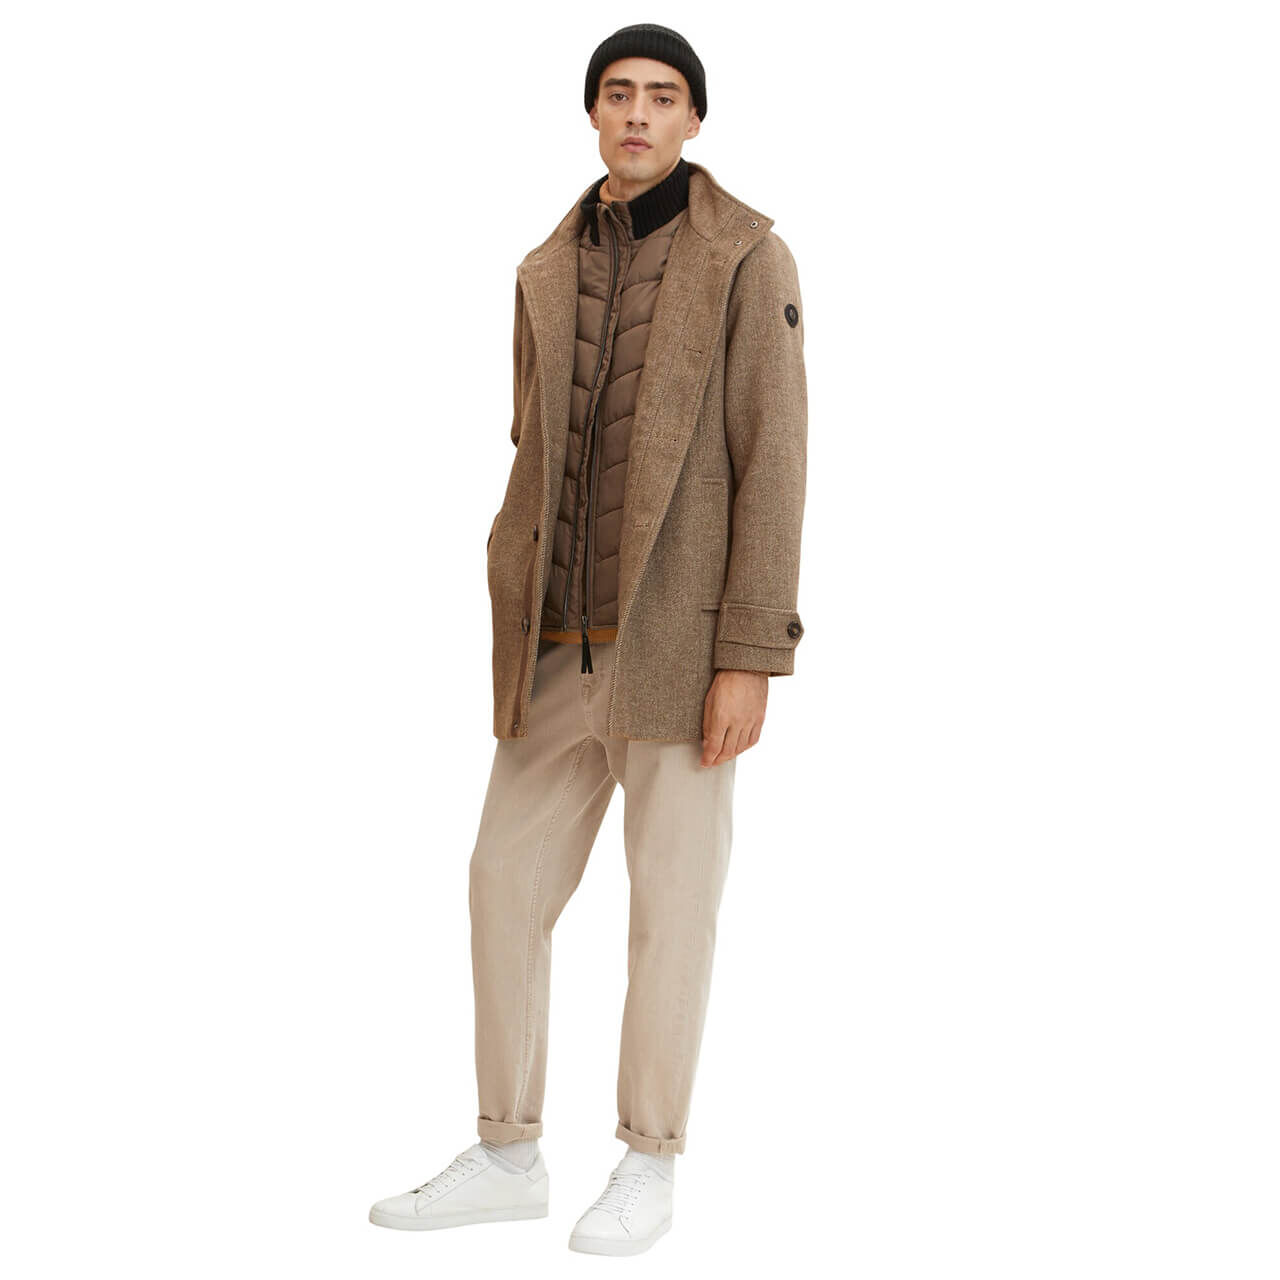 Tom Tailor Herren Mantel Wool Coat 2 in 1 brown chinchilla